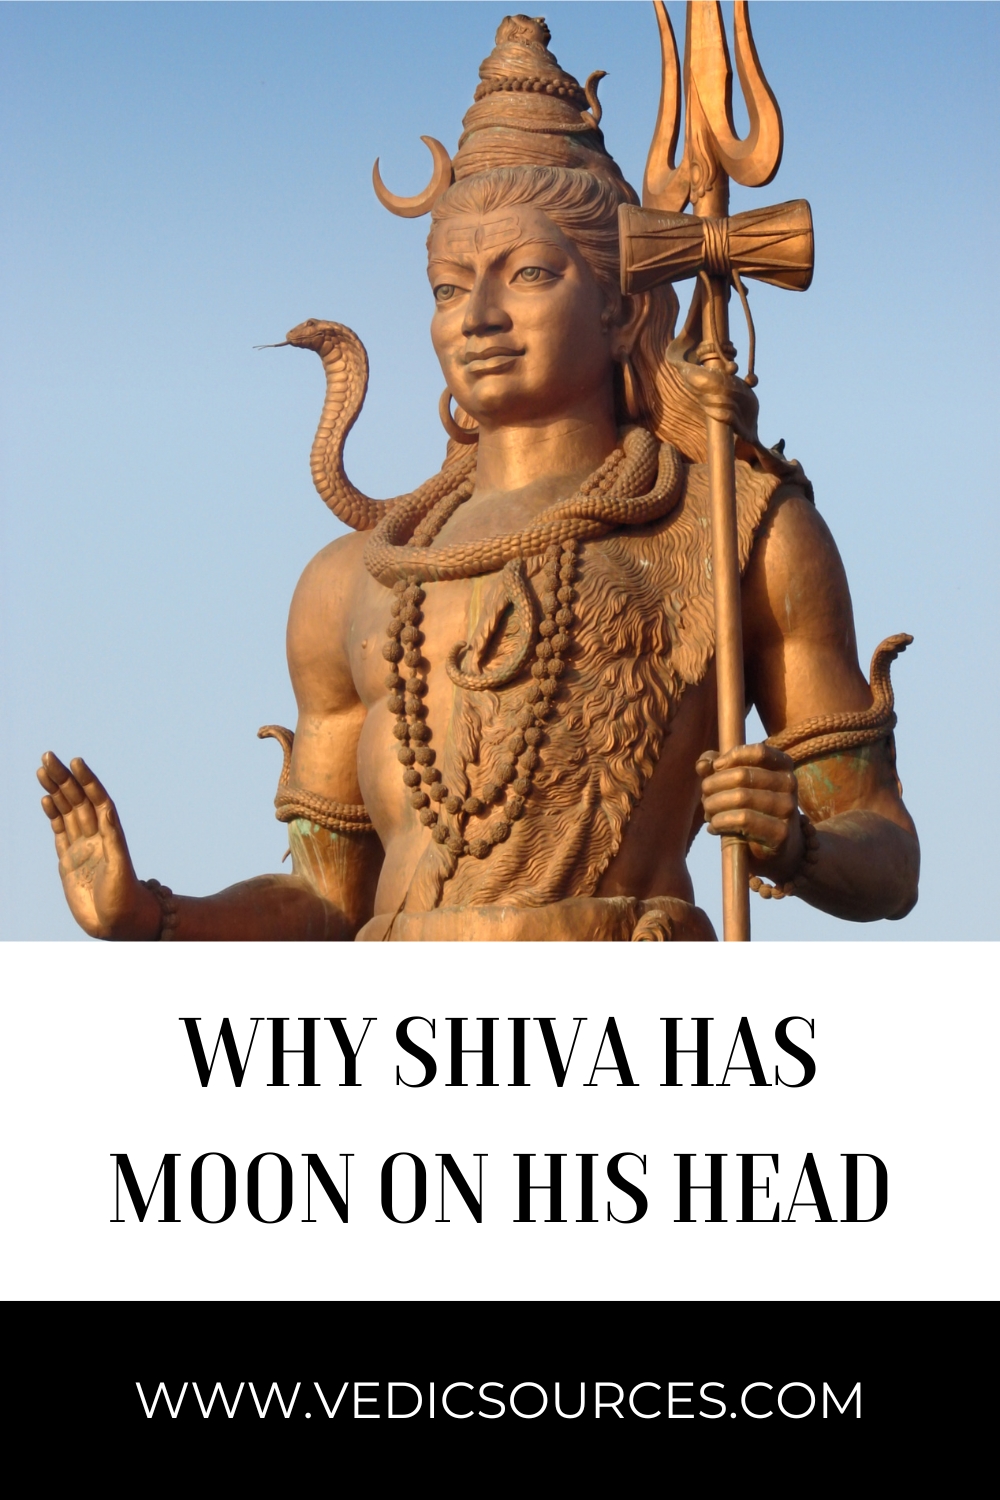 Why Shiva Has Moon on His Head